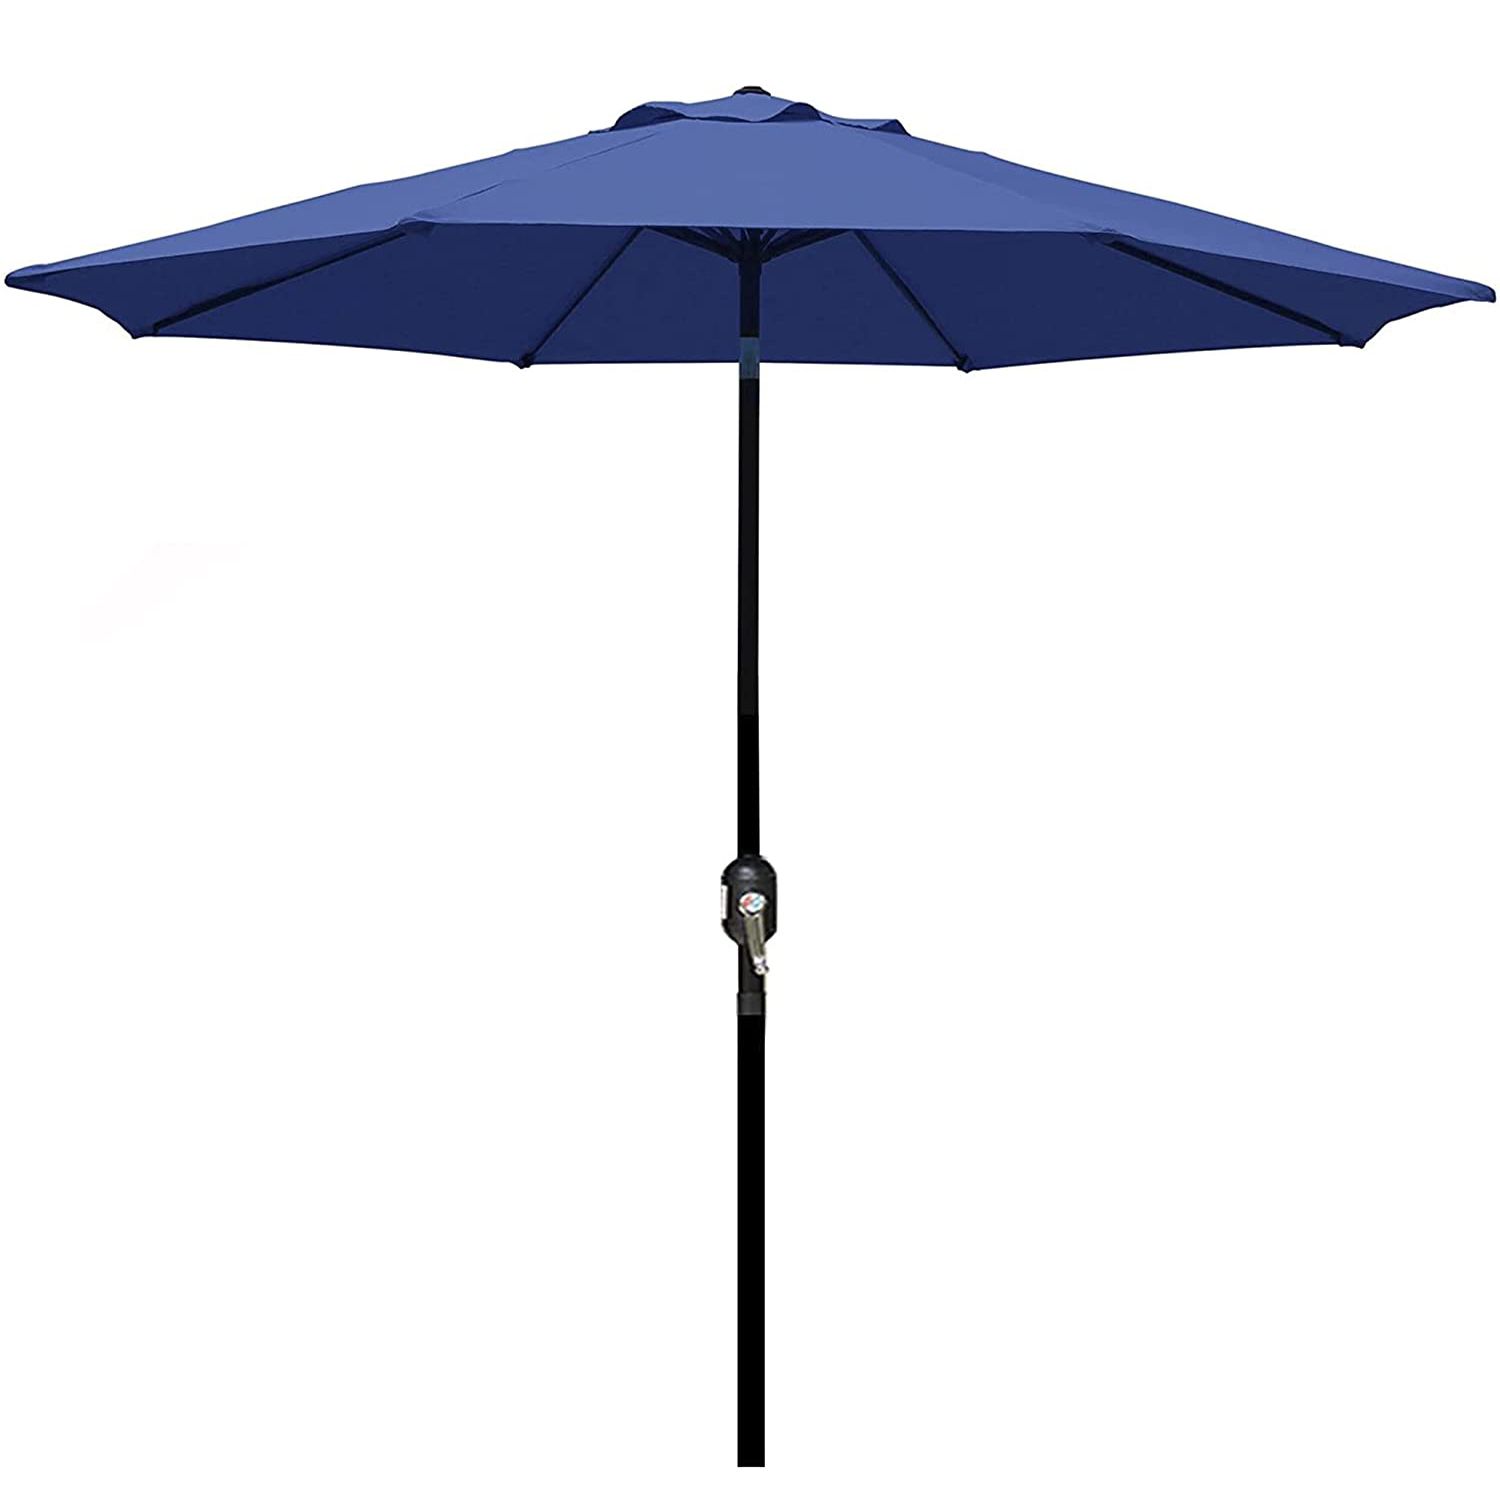 Blissun 9' Outdoor Aluminum Patio Umbrella